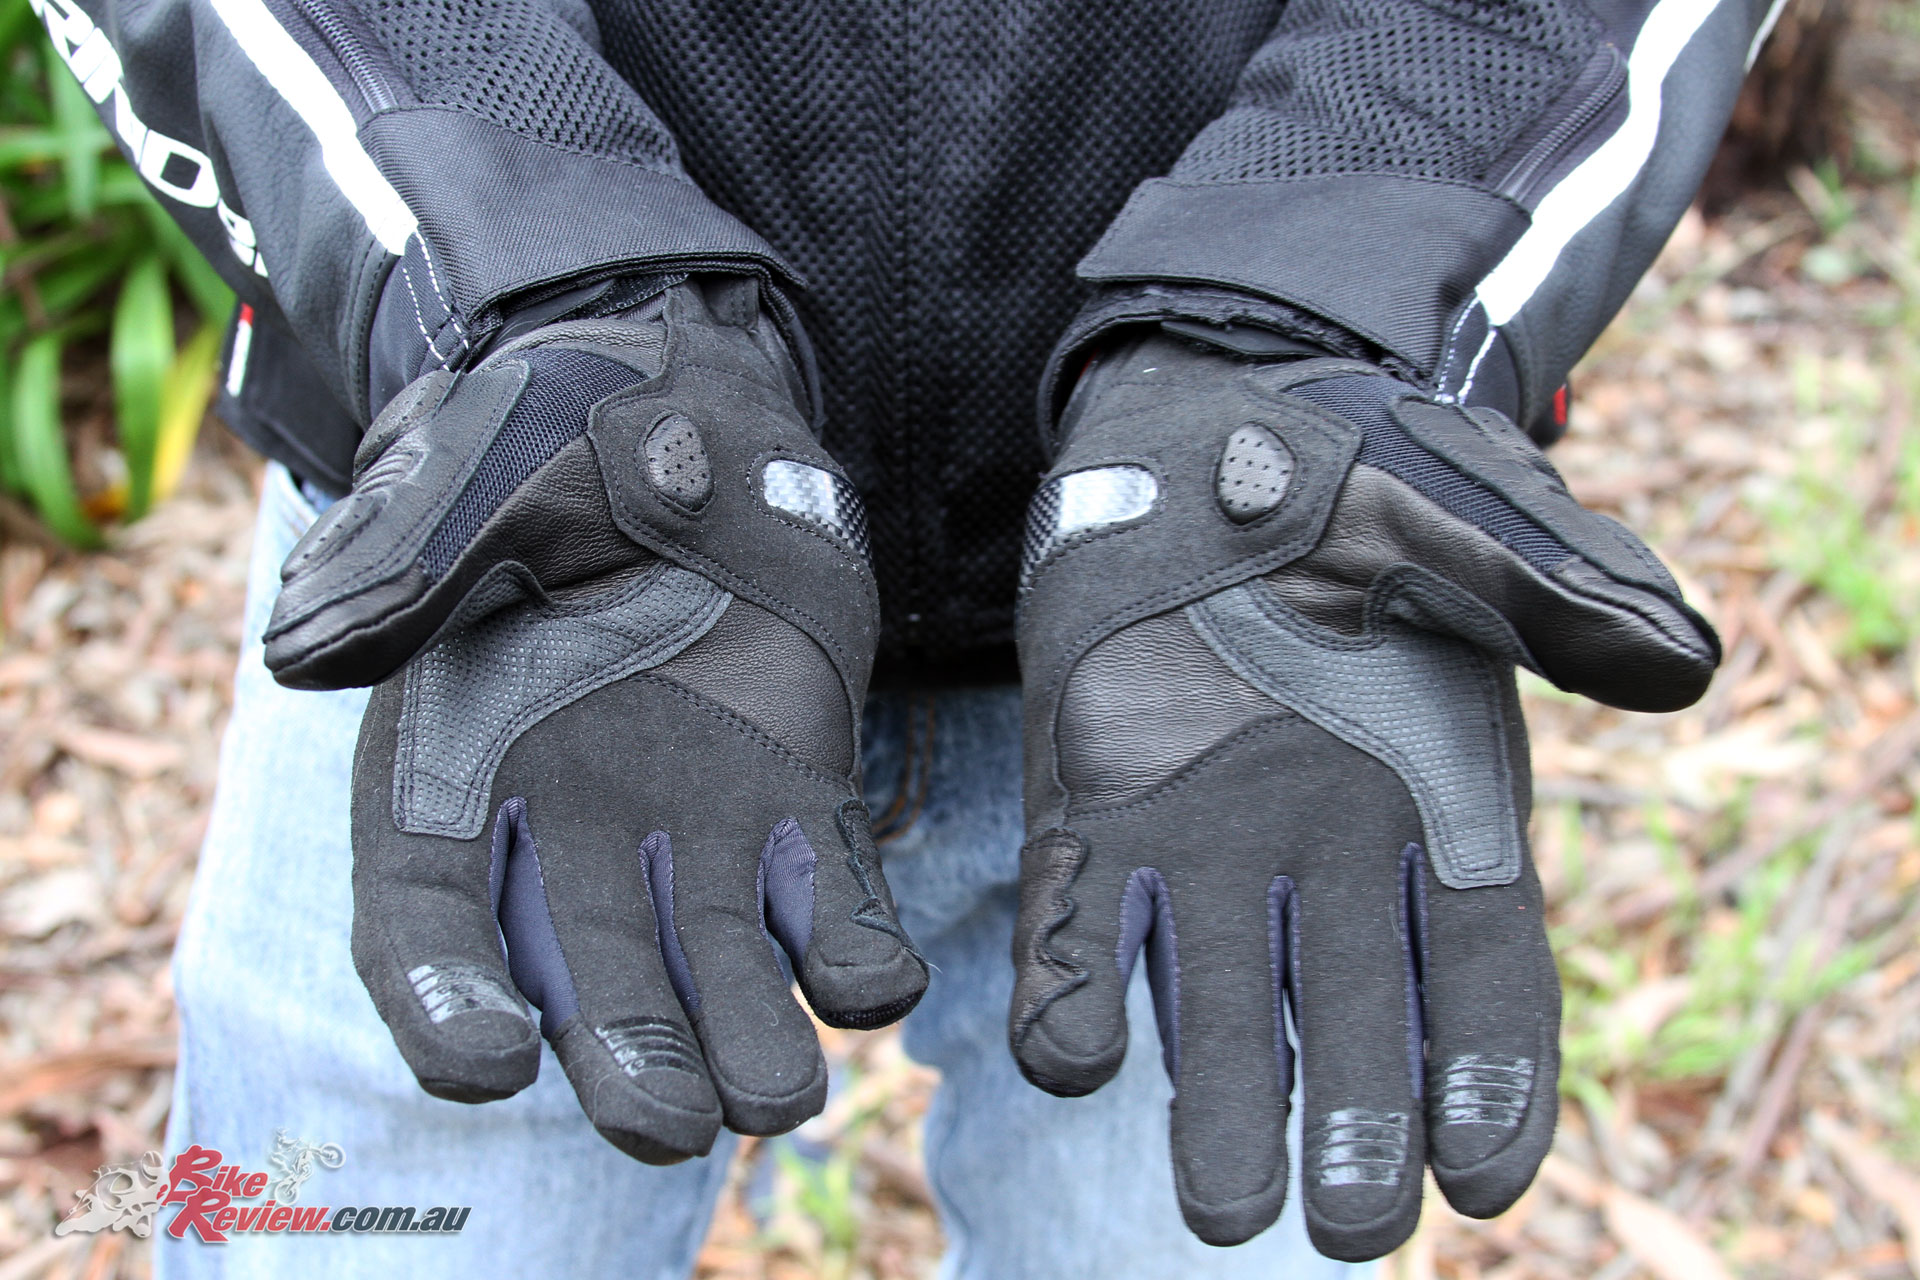 Dririder Strike Glove - Reinforced palms